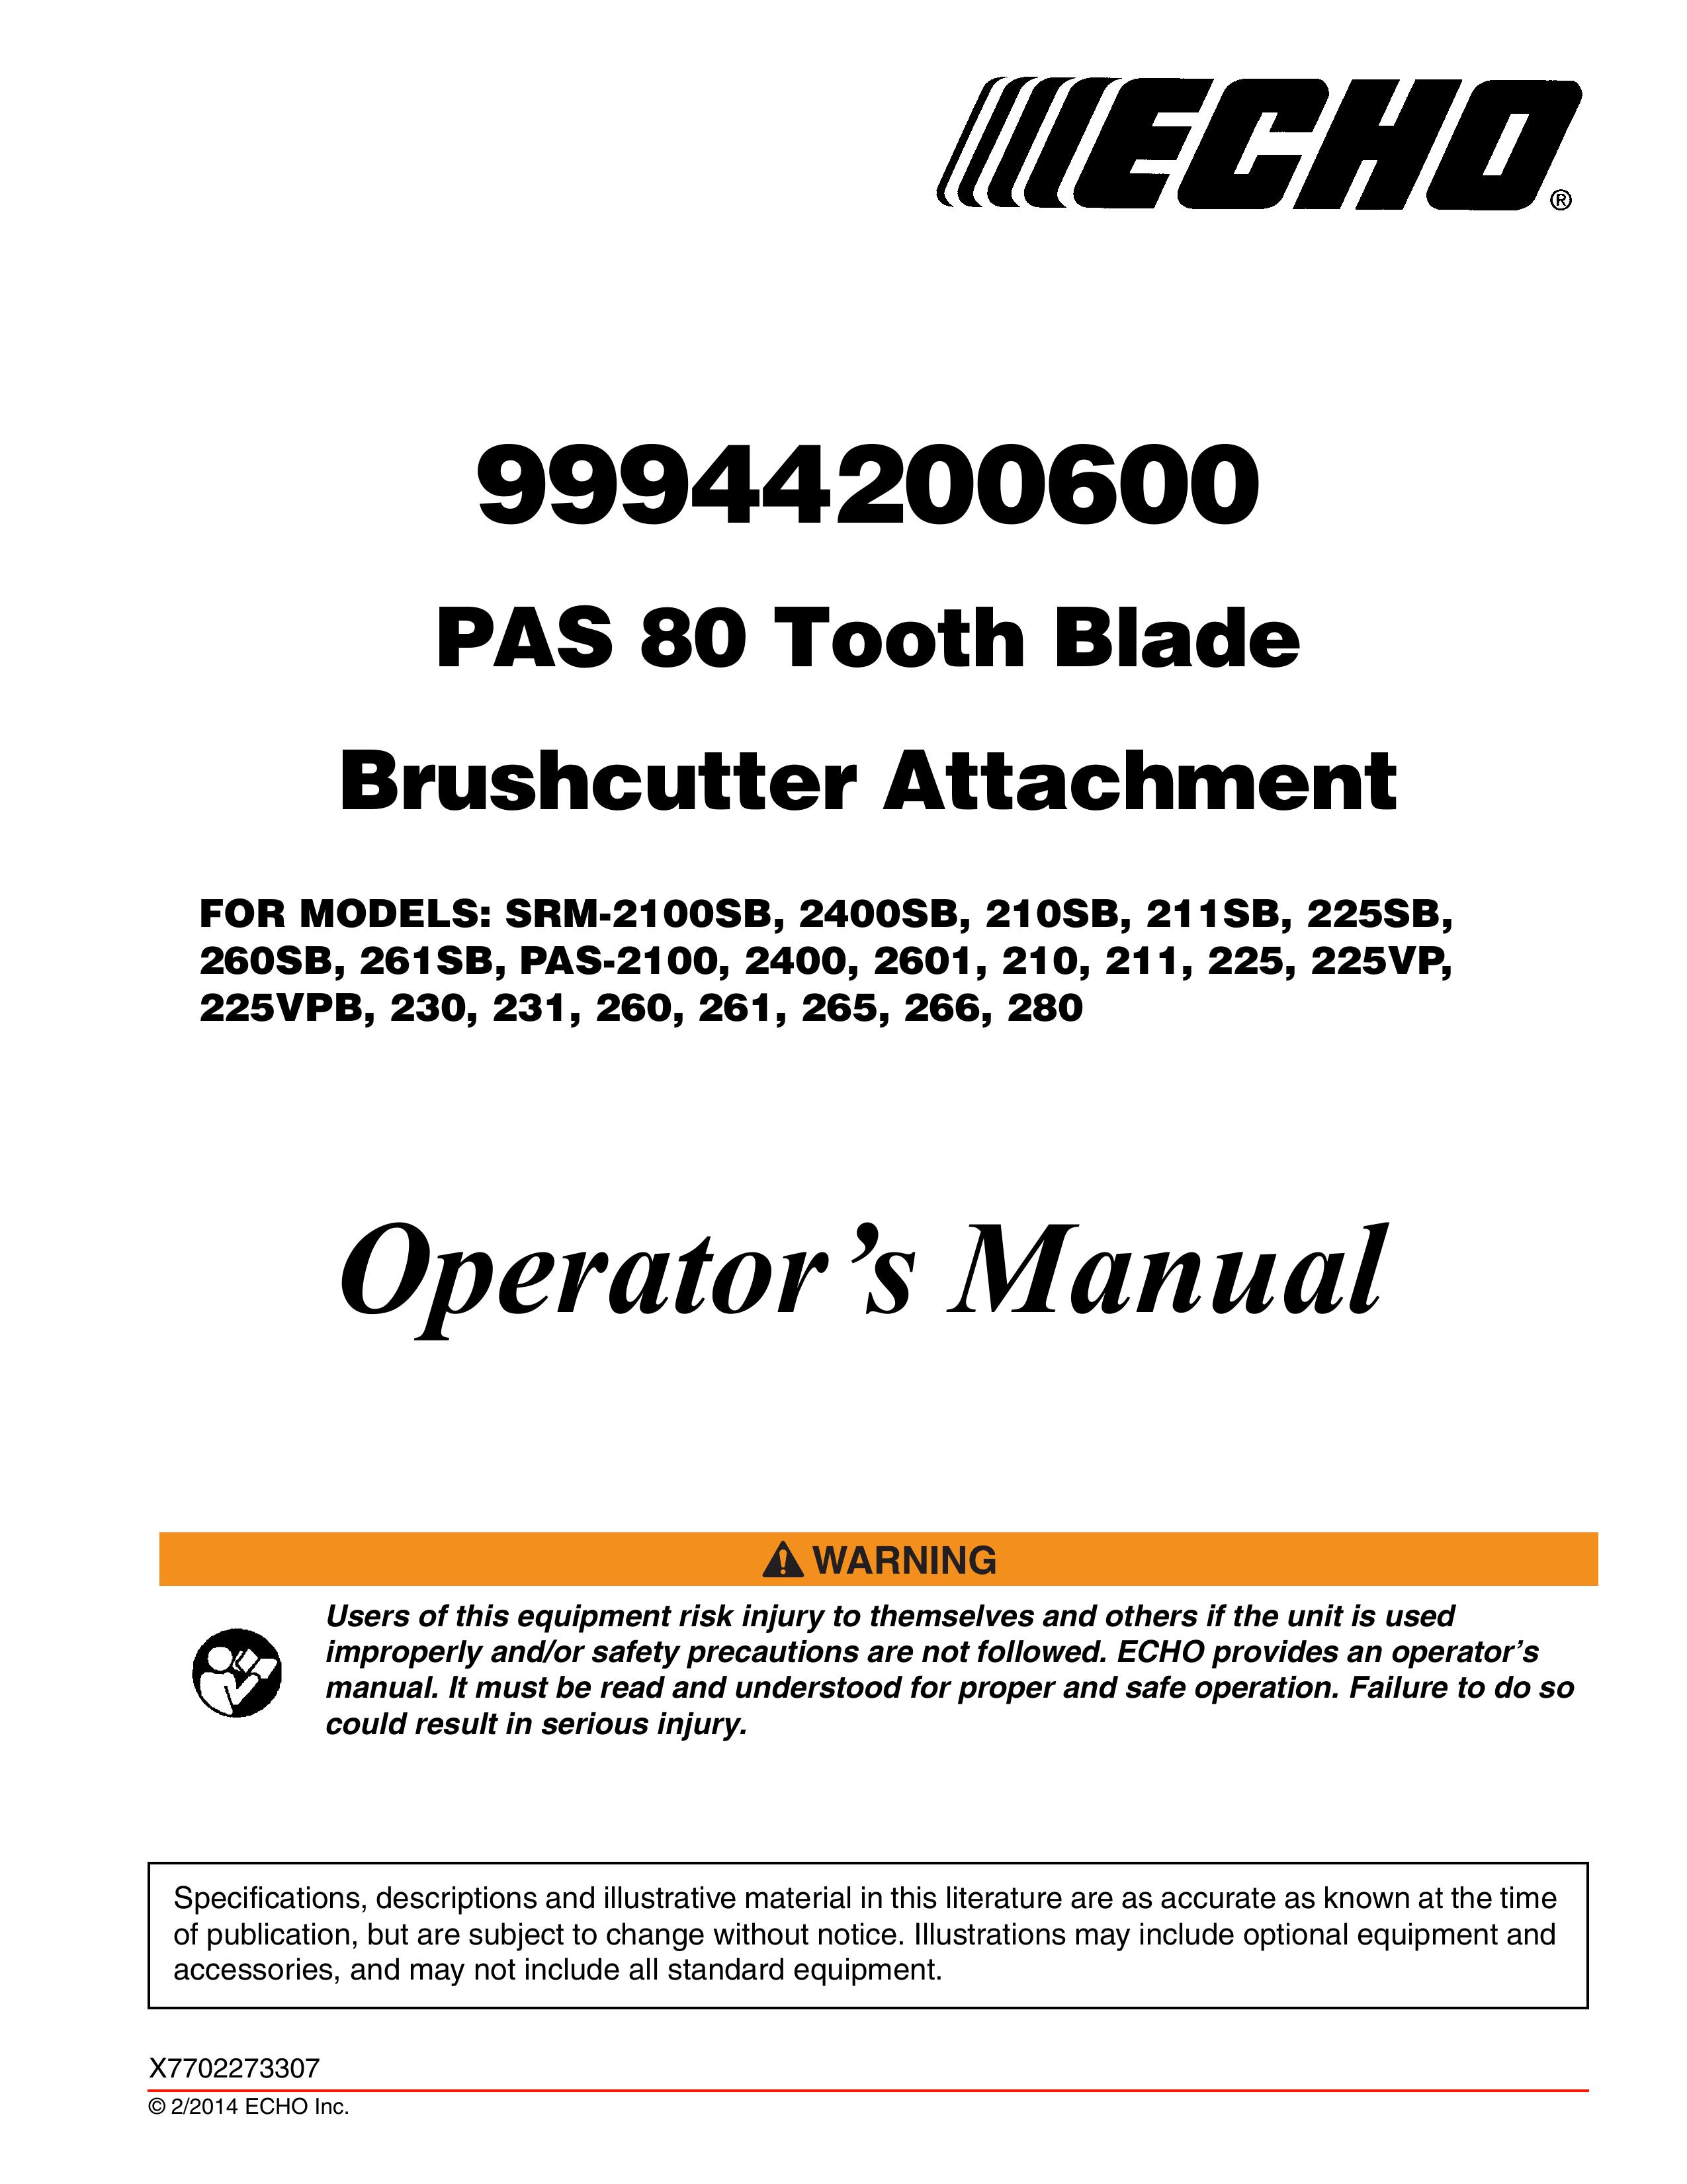 Echo 280 Brush Cutter User Manual